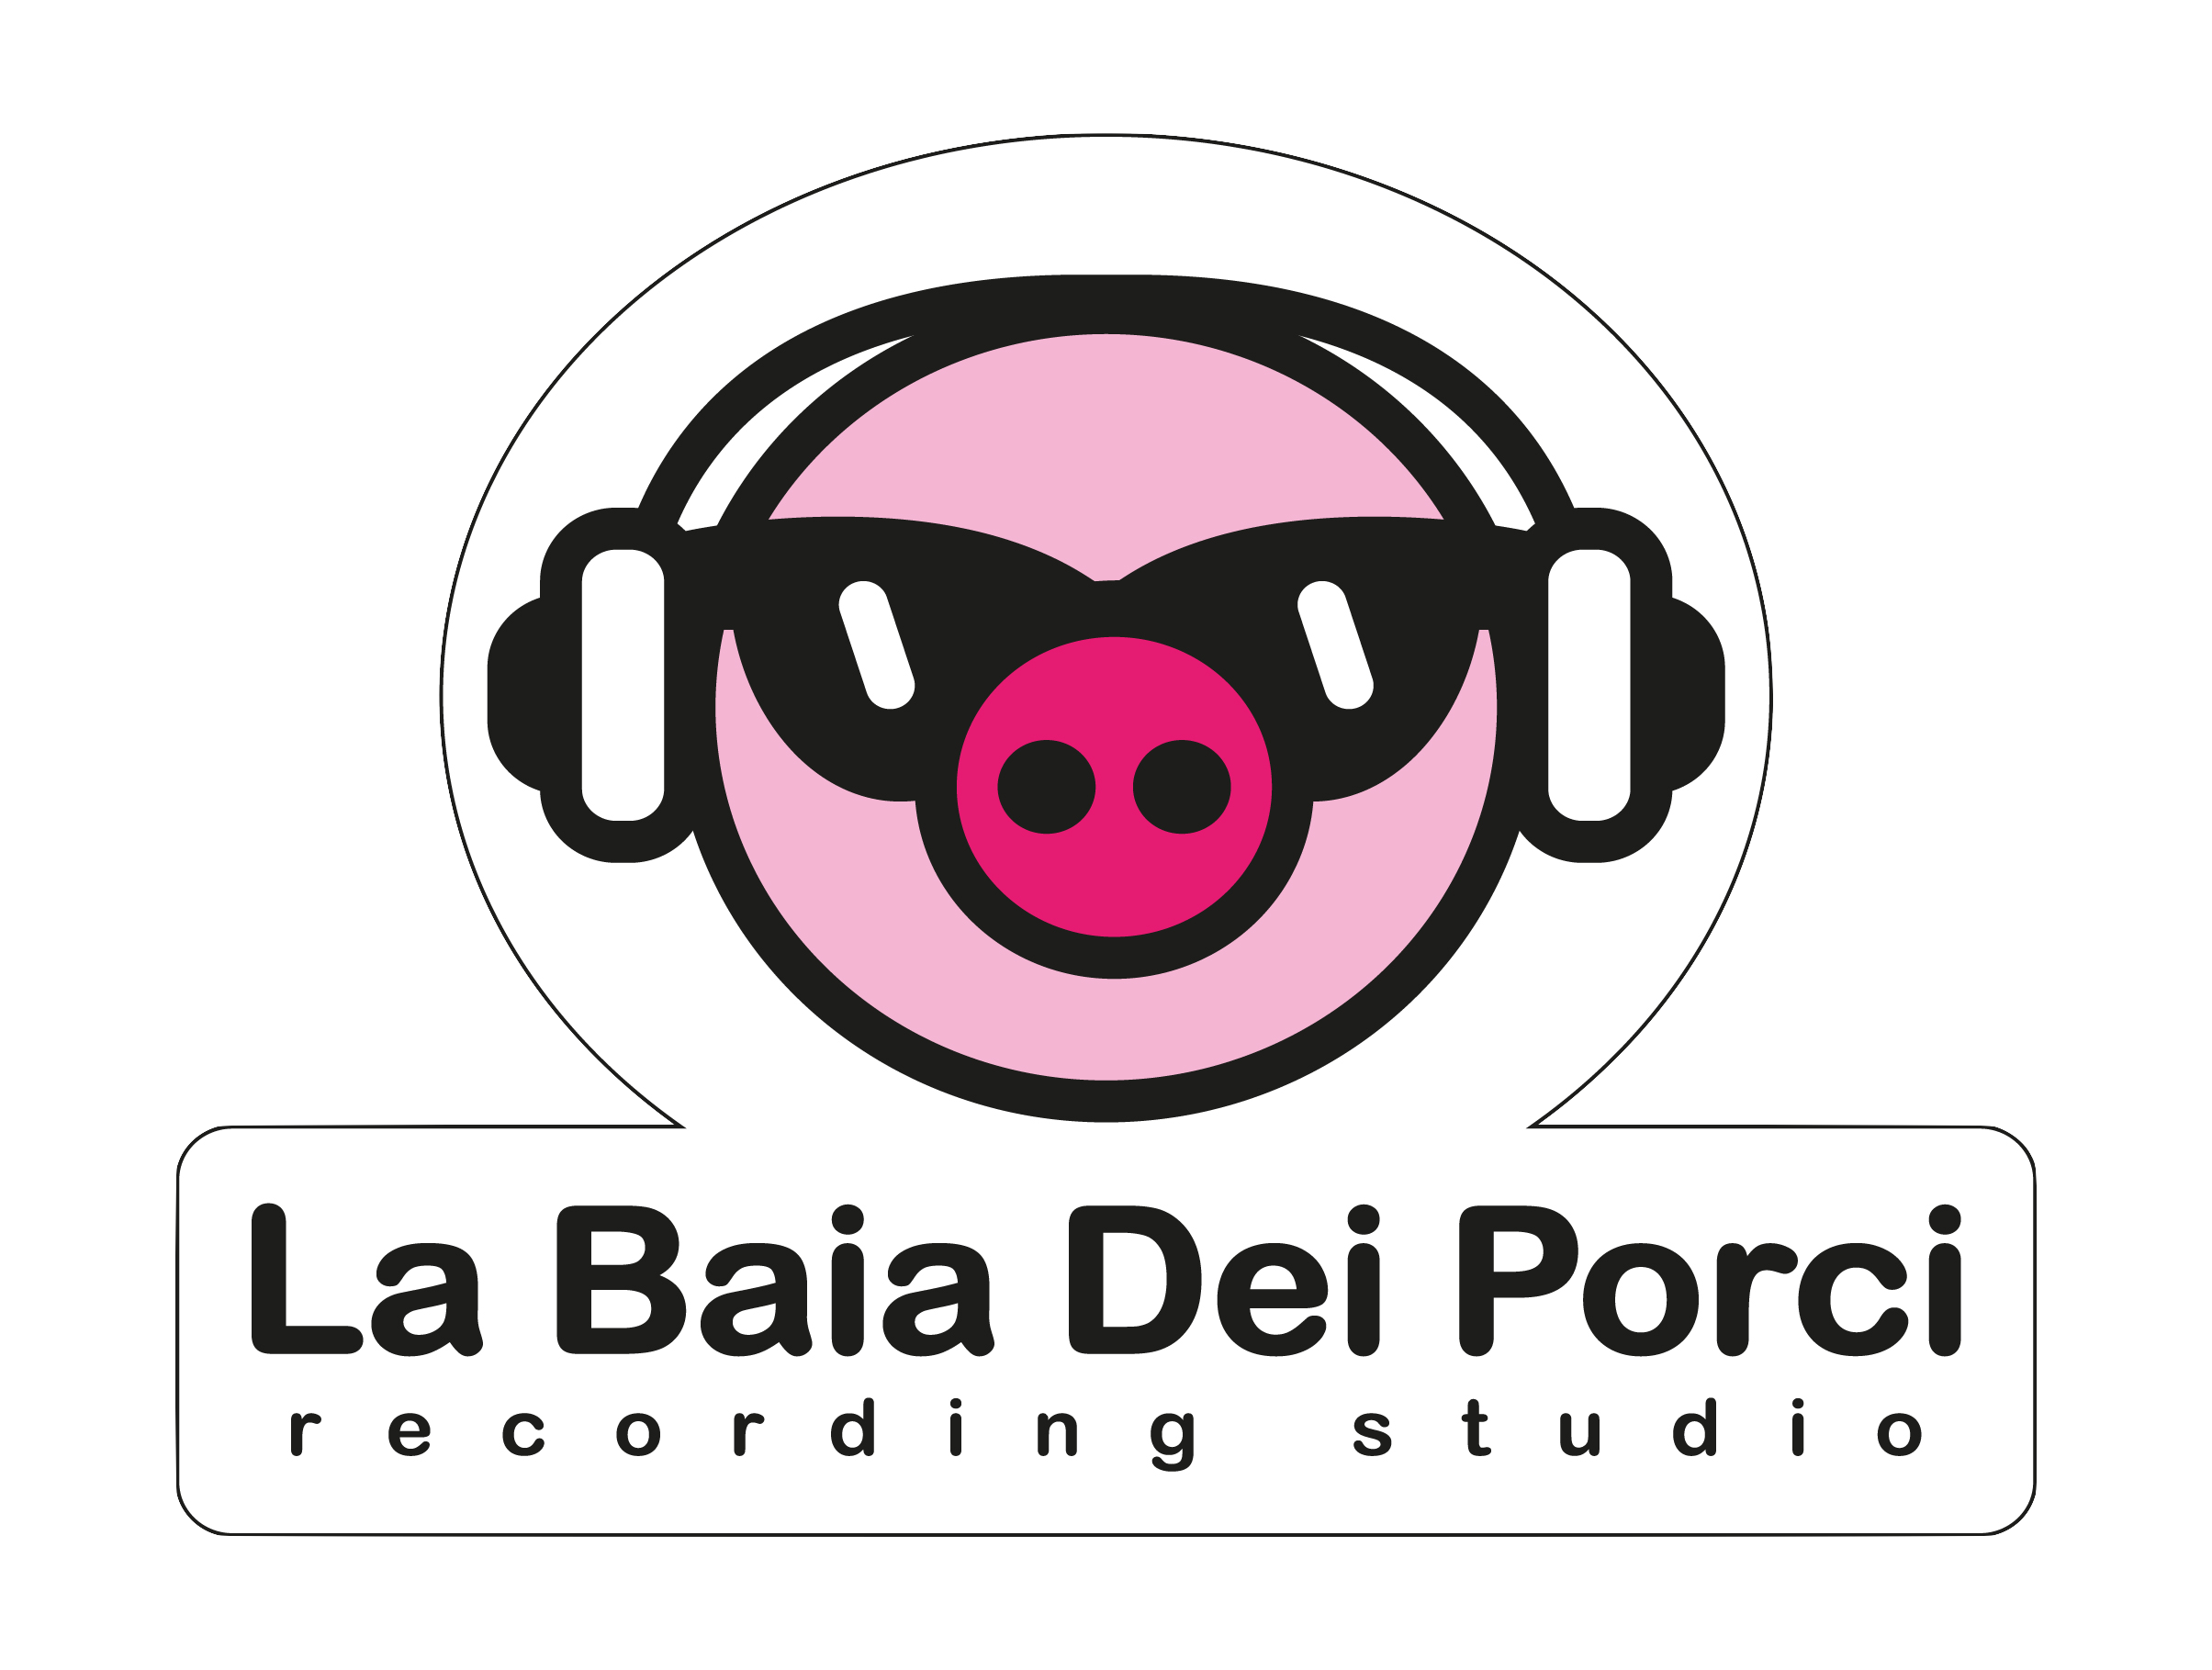 La Baia dei Porci RecordingStudio